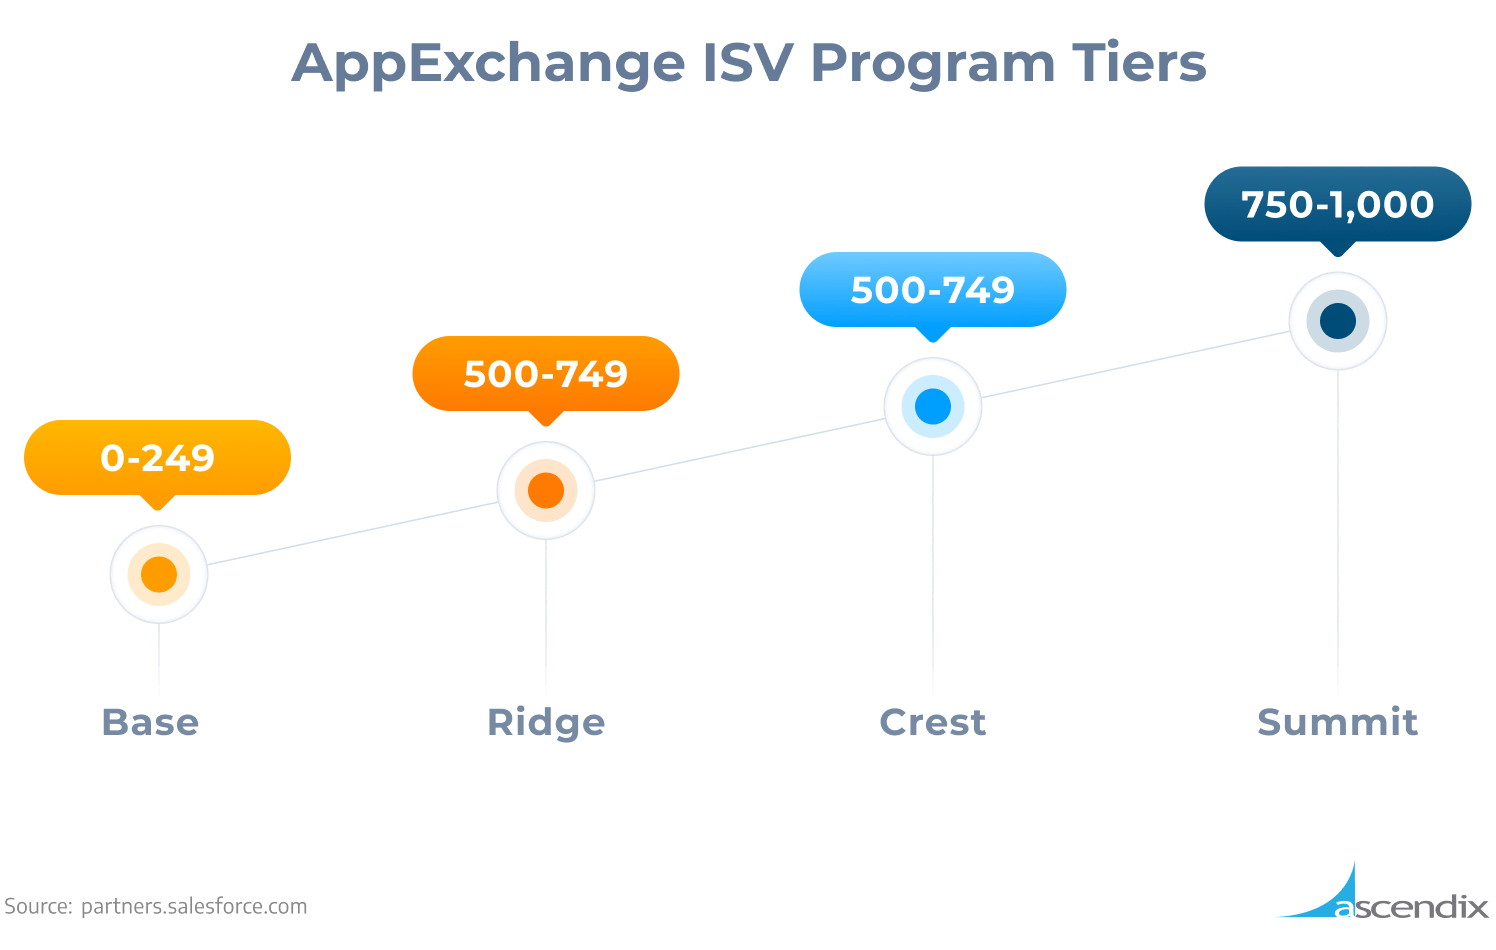 AppExchange ISV Program Tiers